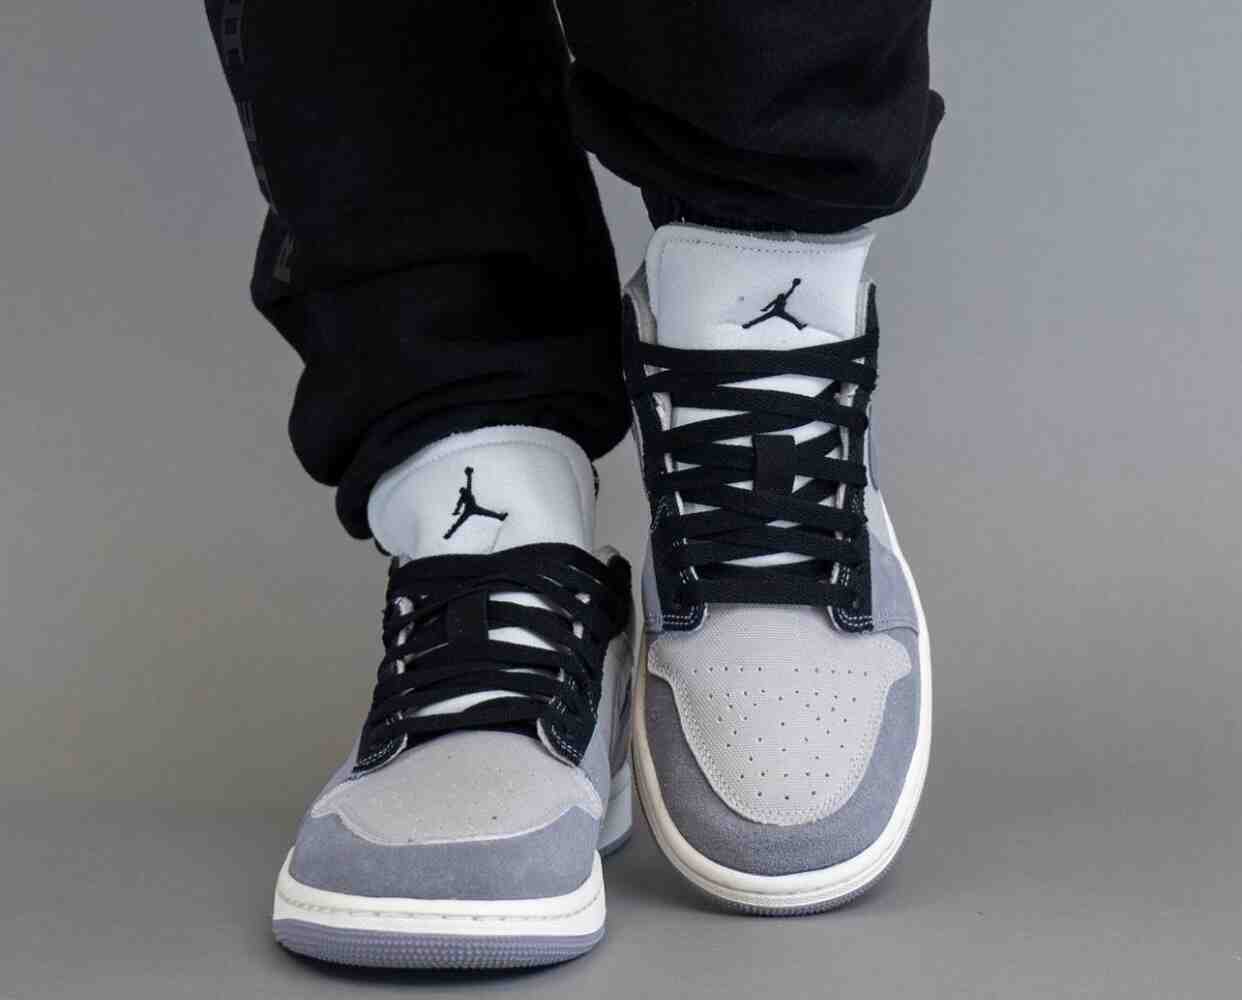 乔丹, Swoosh, Jordan Brand, Jordan, Air Jordan 1 Low, Air Jordan 1, Air Jordan